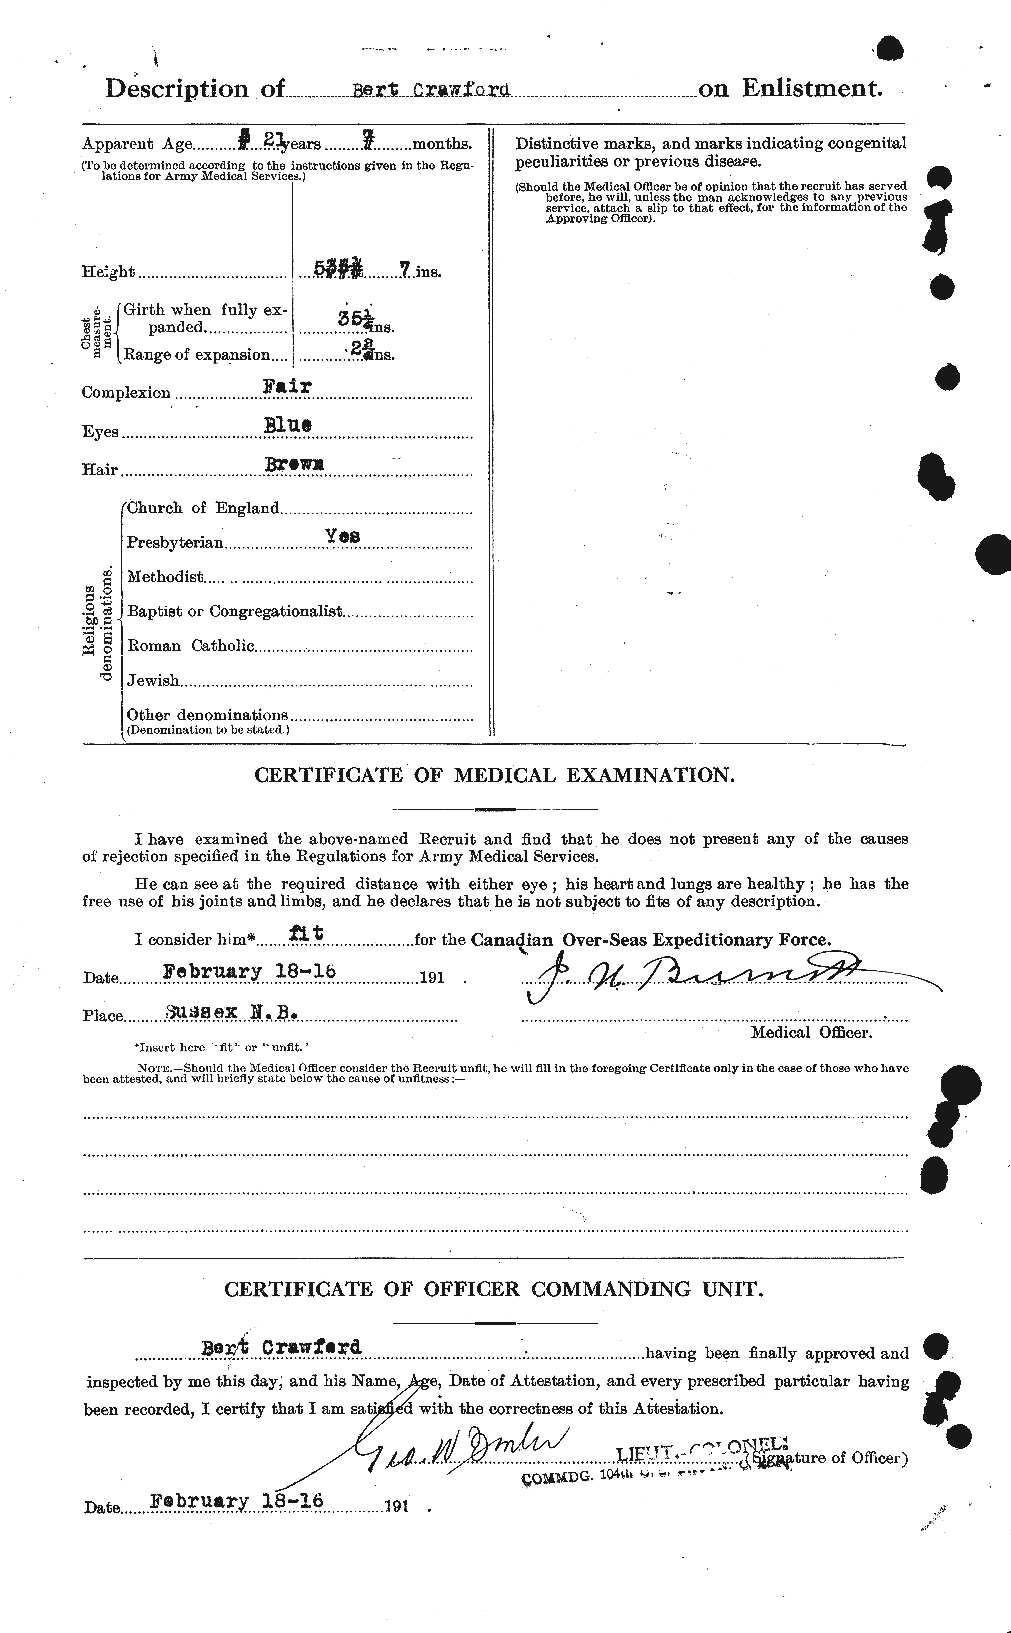 Dossiers du Personnel de la Première Guerre mondiale - CEC 060919b